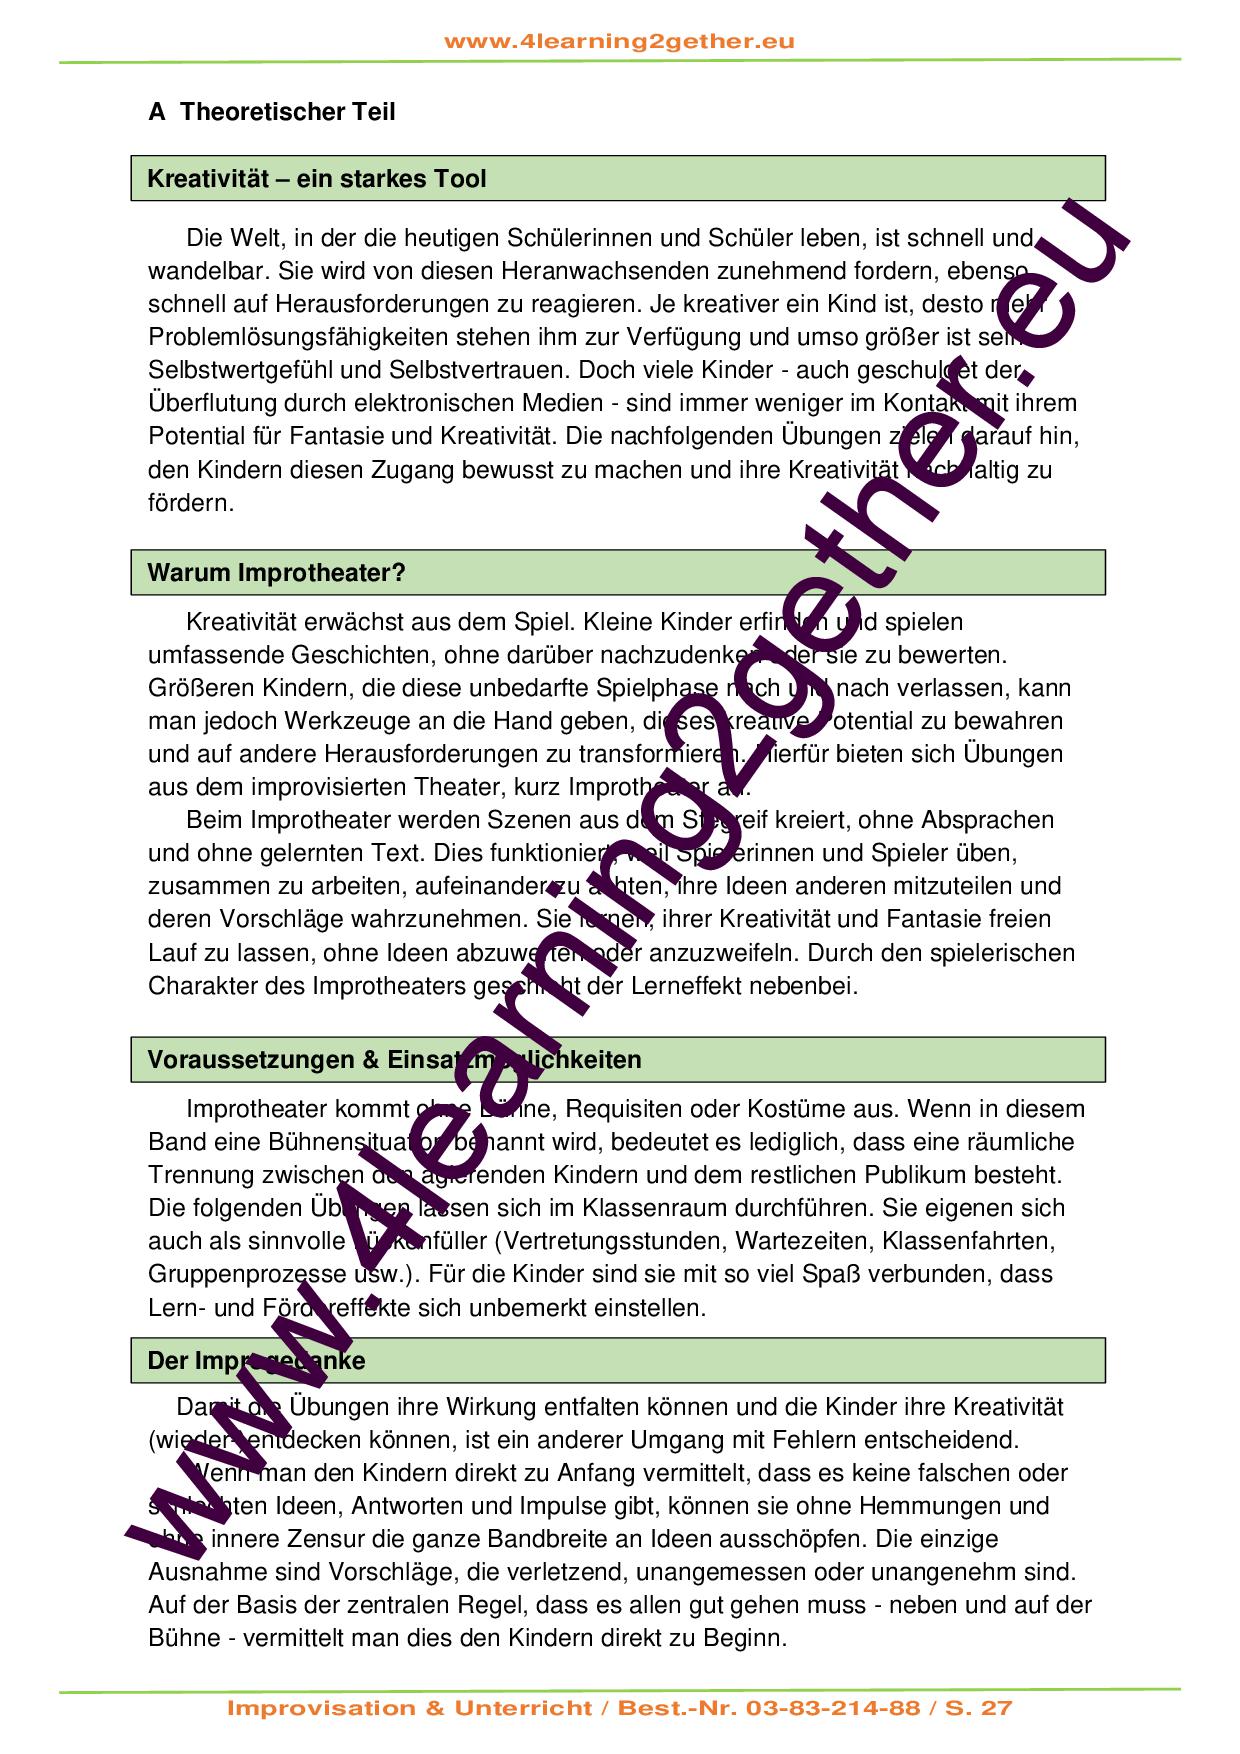 Improvisation & Unterricht - Geschichten erzählen & Kreativität fördern/ PDF / ab 7 J.  